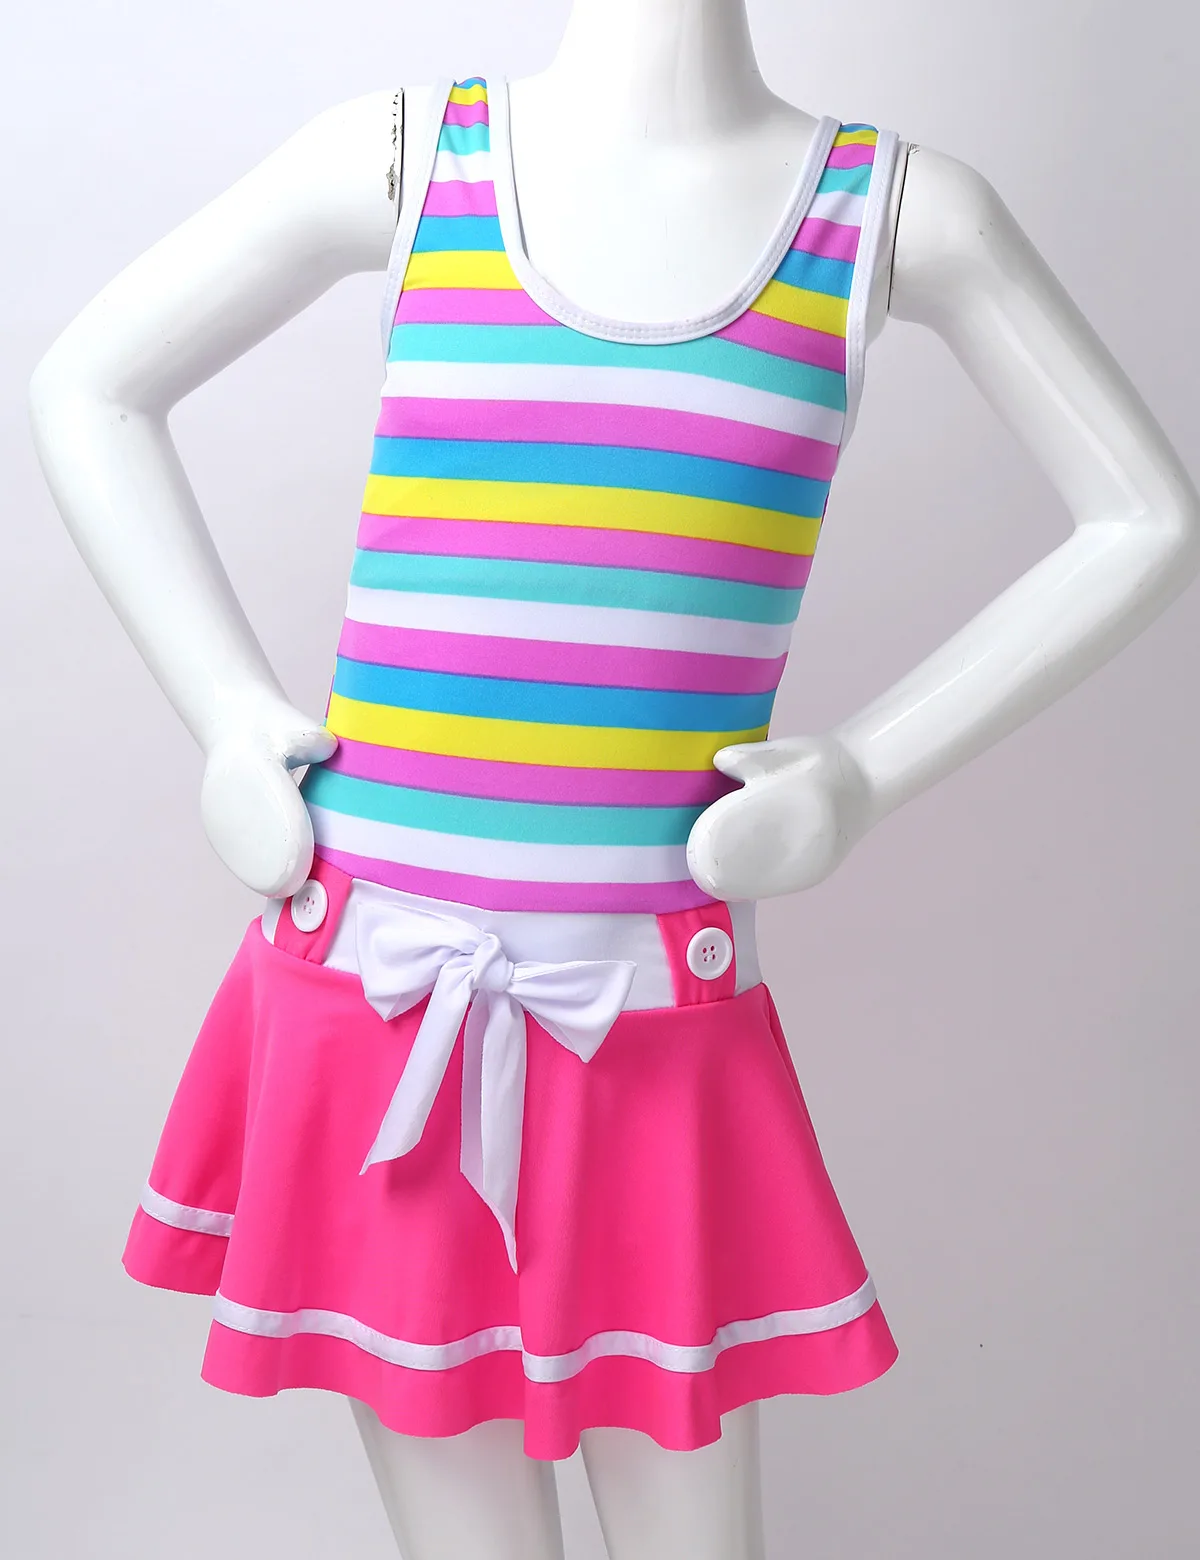 

Girls One Piece Swimsuits Skirt Suit Children Swimwear Princesss Kids Beach Dress Bathing Suits Hot Summer Beach Wear Clothes